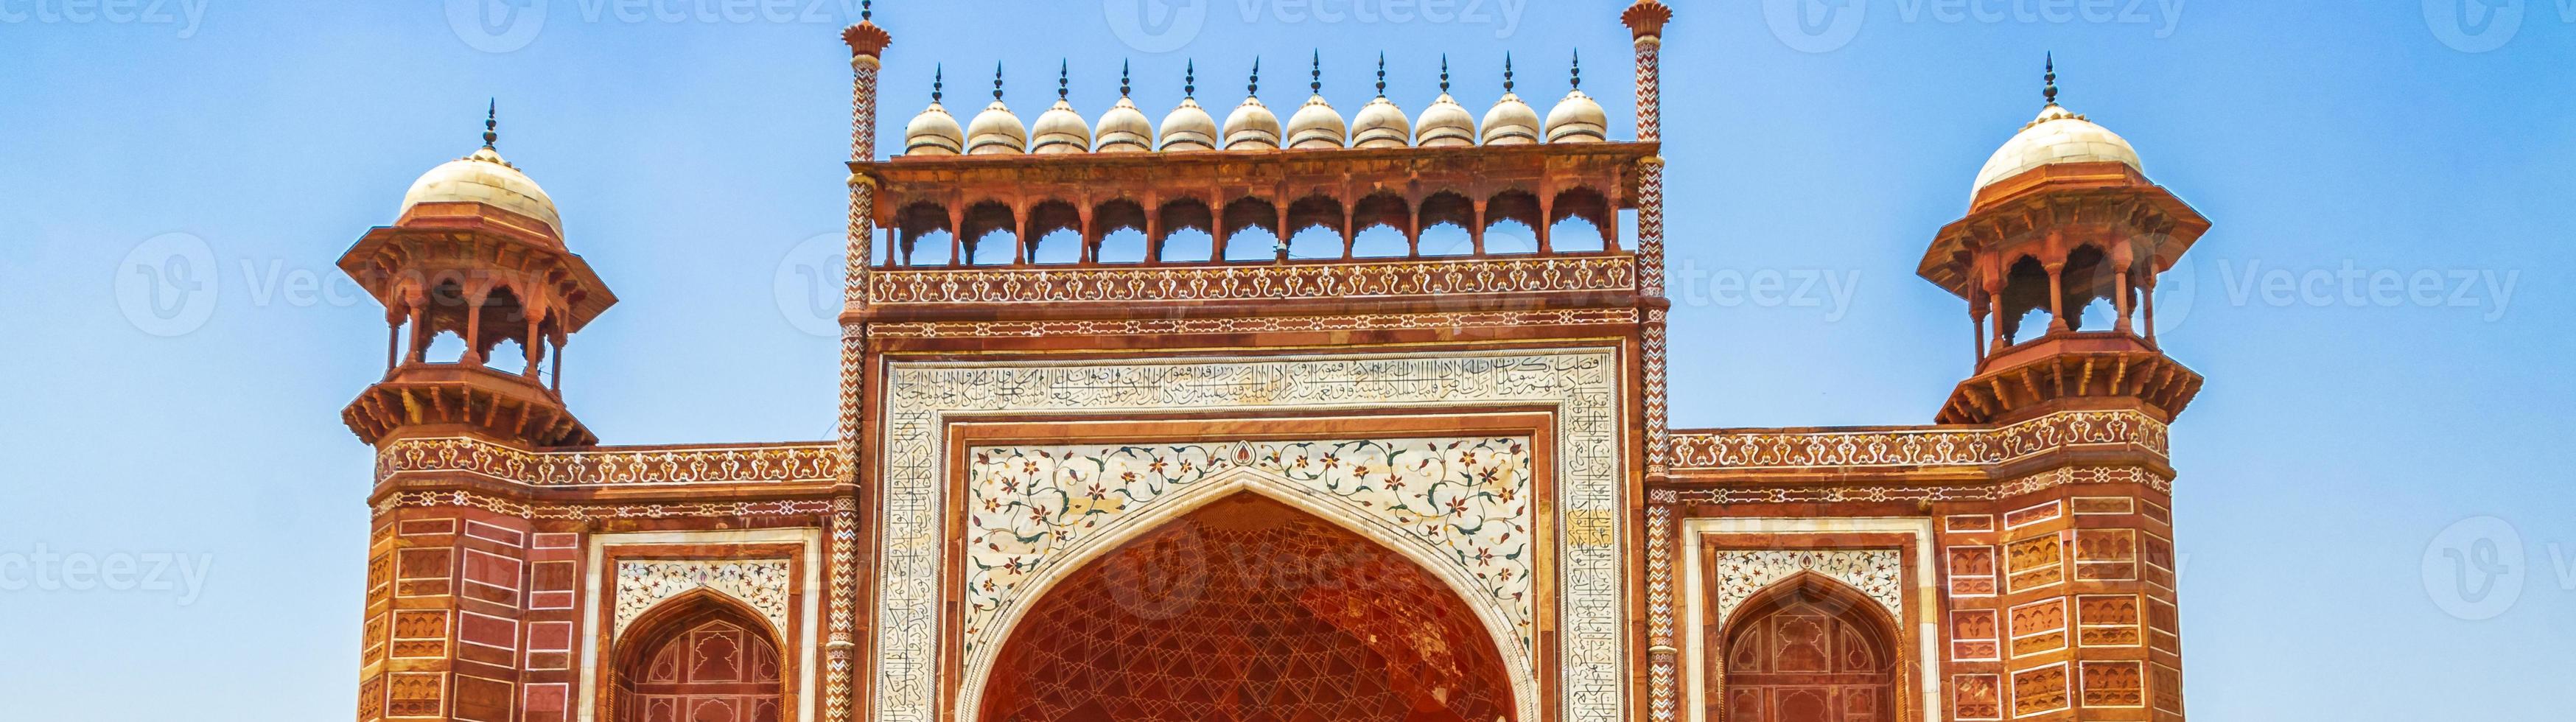 Taj Mahal Agra India Great Gate Red verbazingwekkende gedetailleerde architectuur. foto